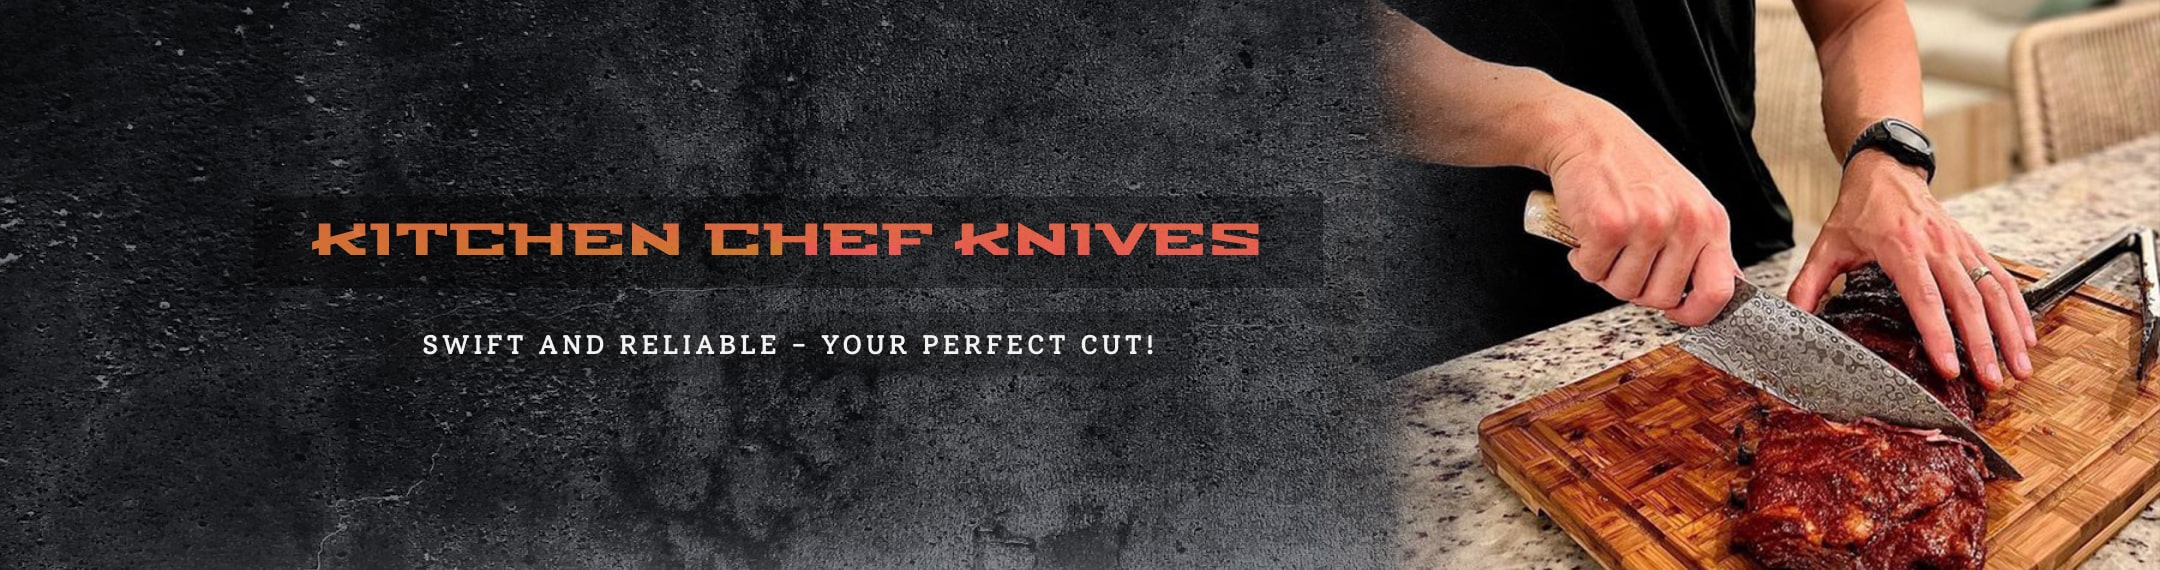 Kitchen & chef knives